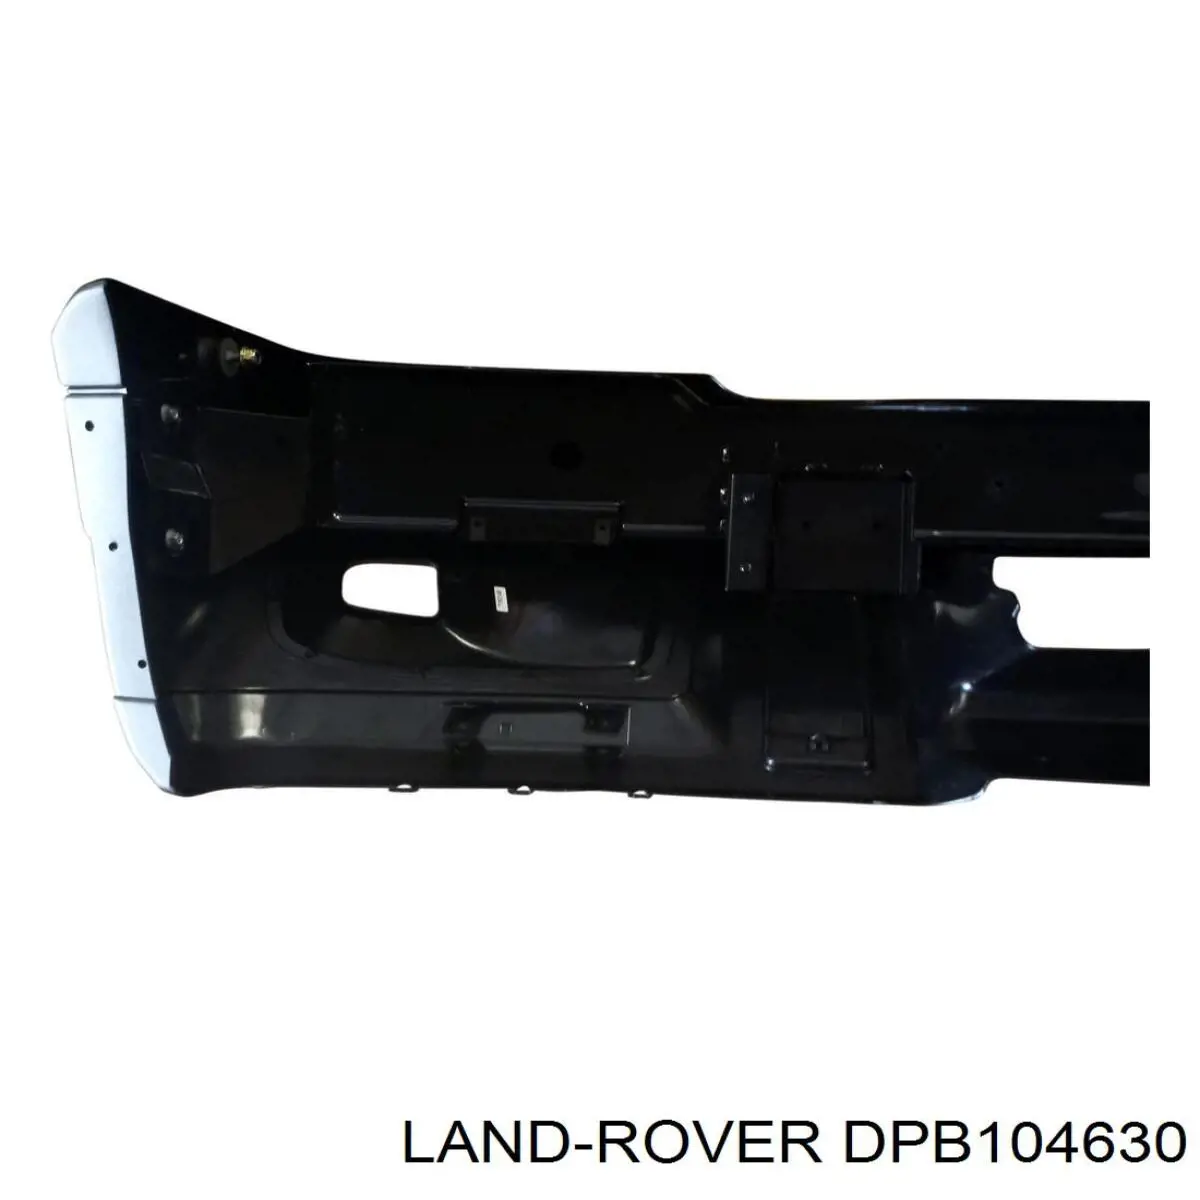 DPB104630 Land Rover paragolpes delantero